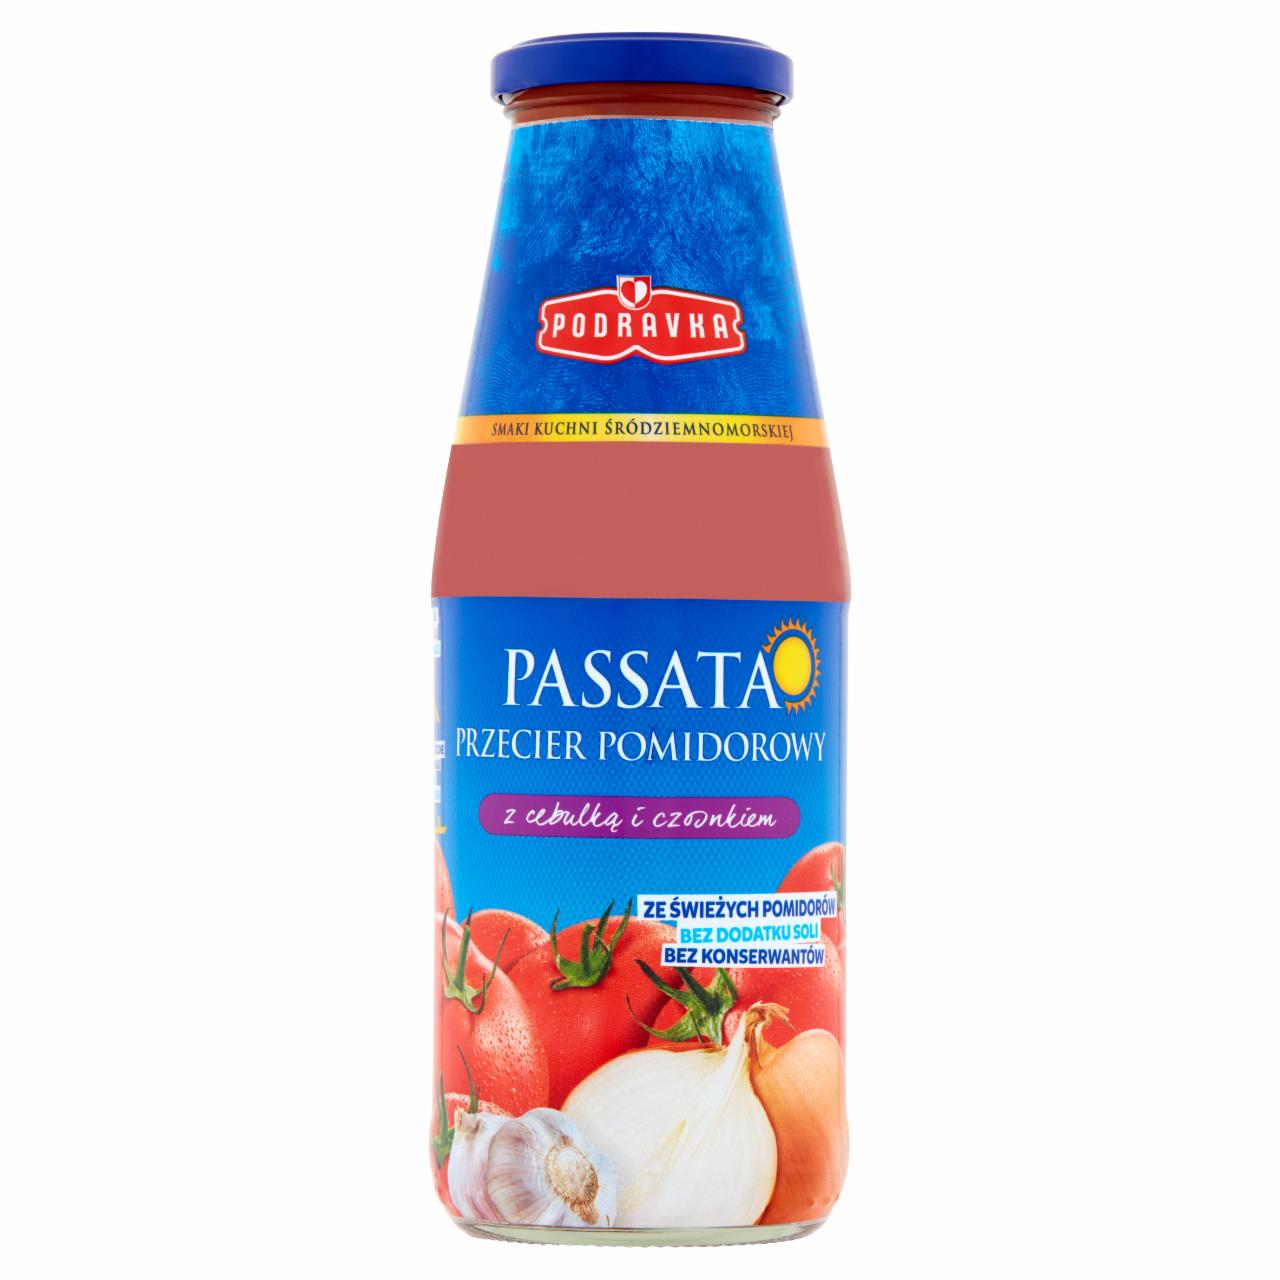 Zdjęcia - Podravka Passata przecier pomidorowy z cebulką i czosnkiem 680 g